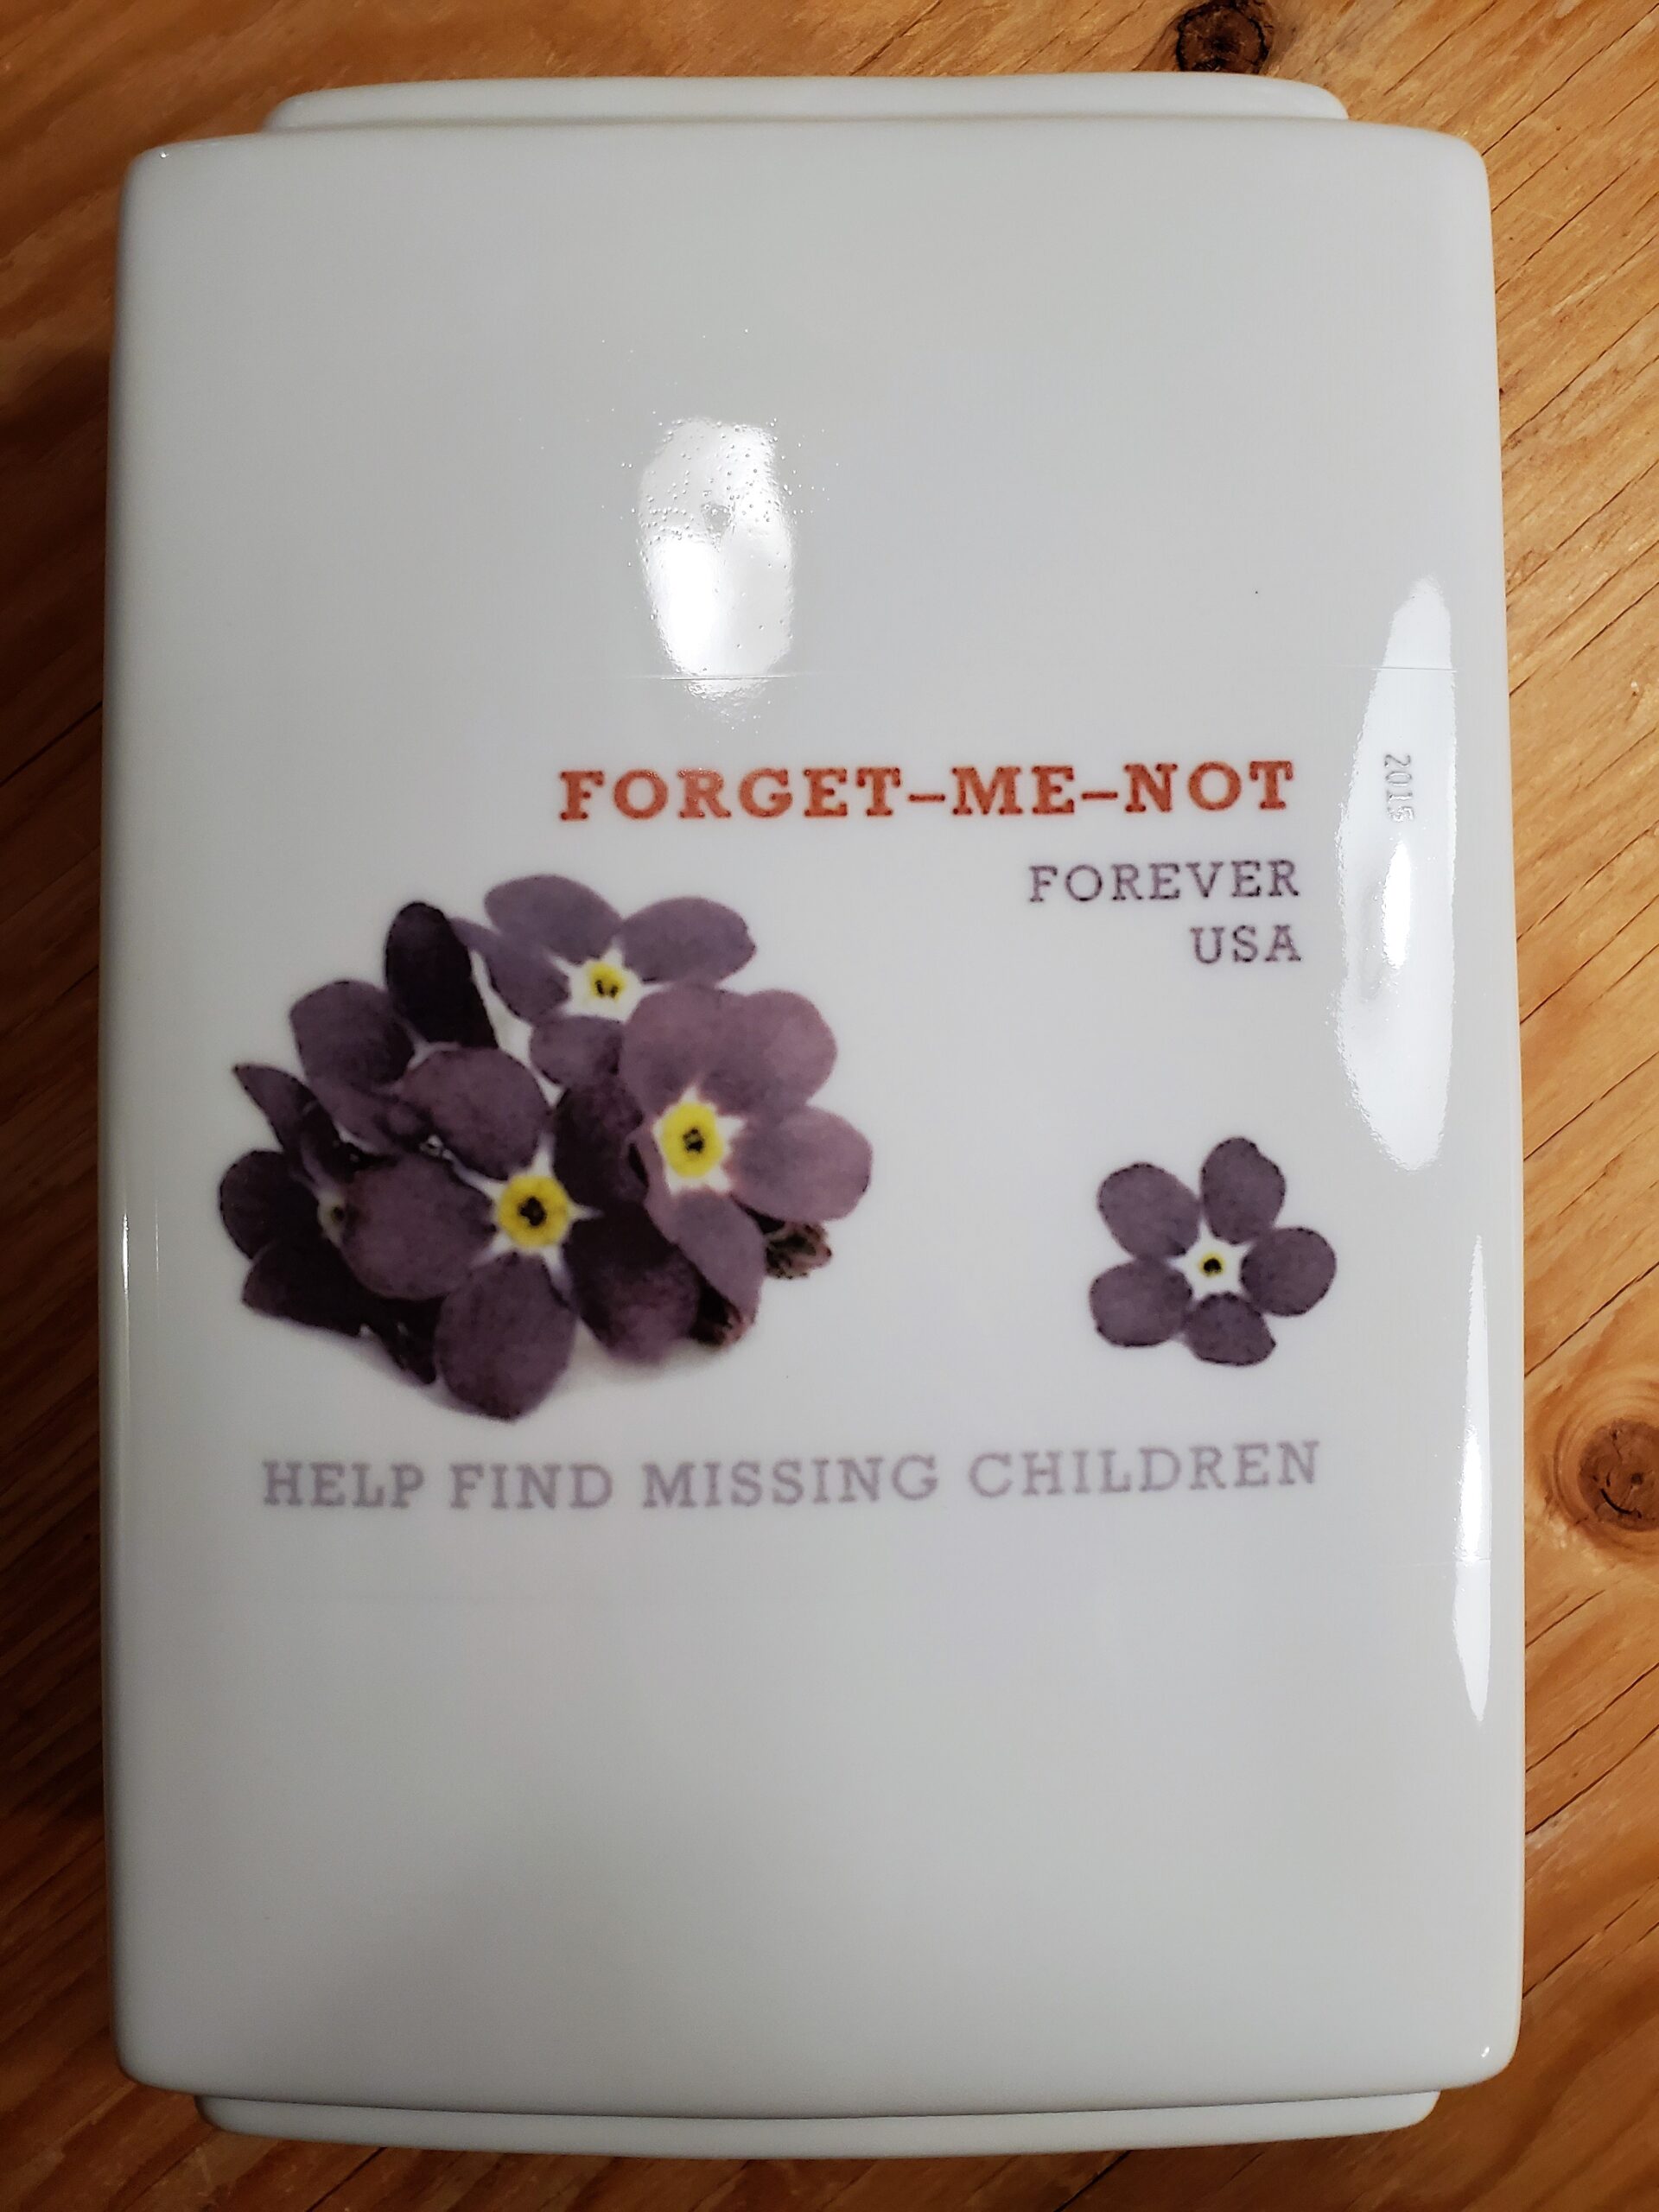 Custom Printed Vases for Missing Children Fund Raiser Front